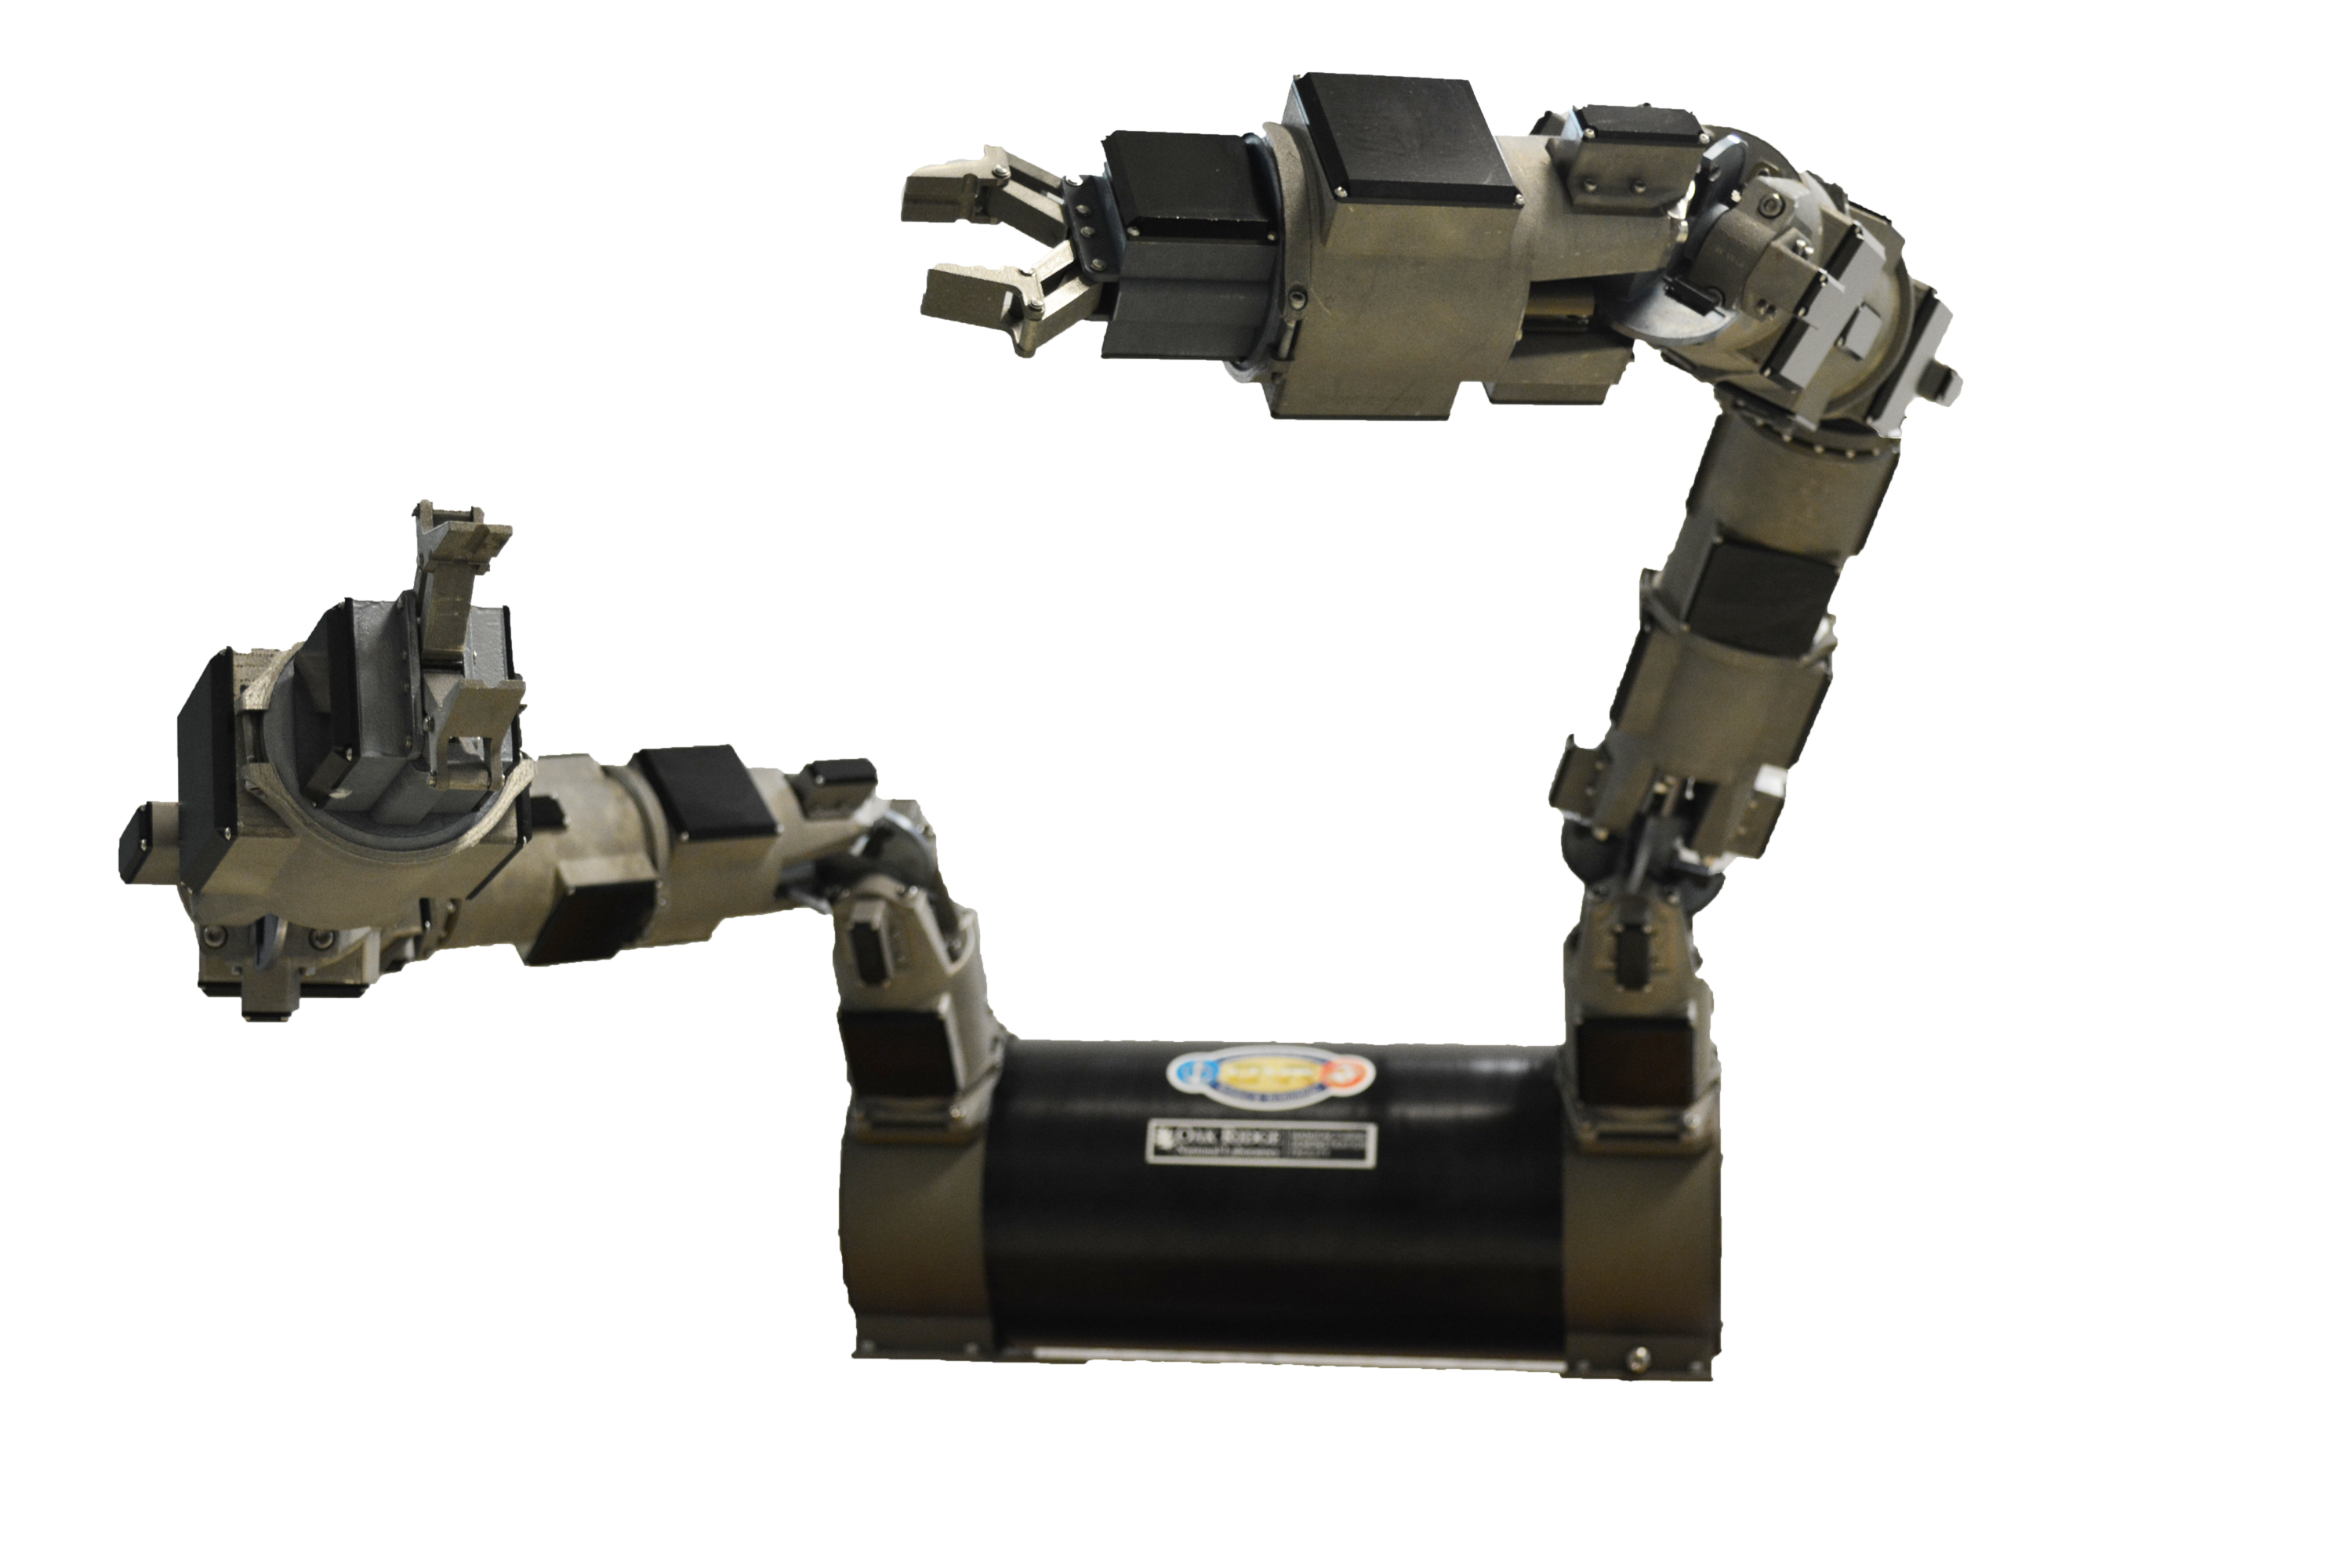 Titanium robotic arms